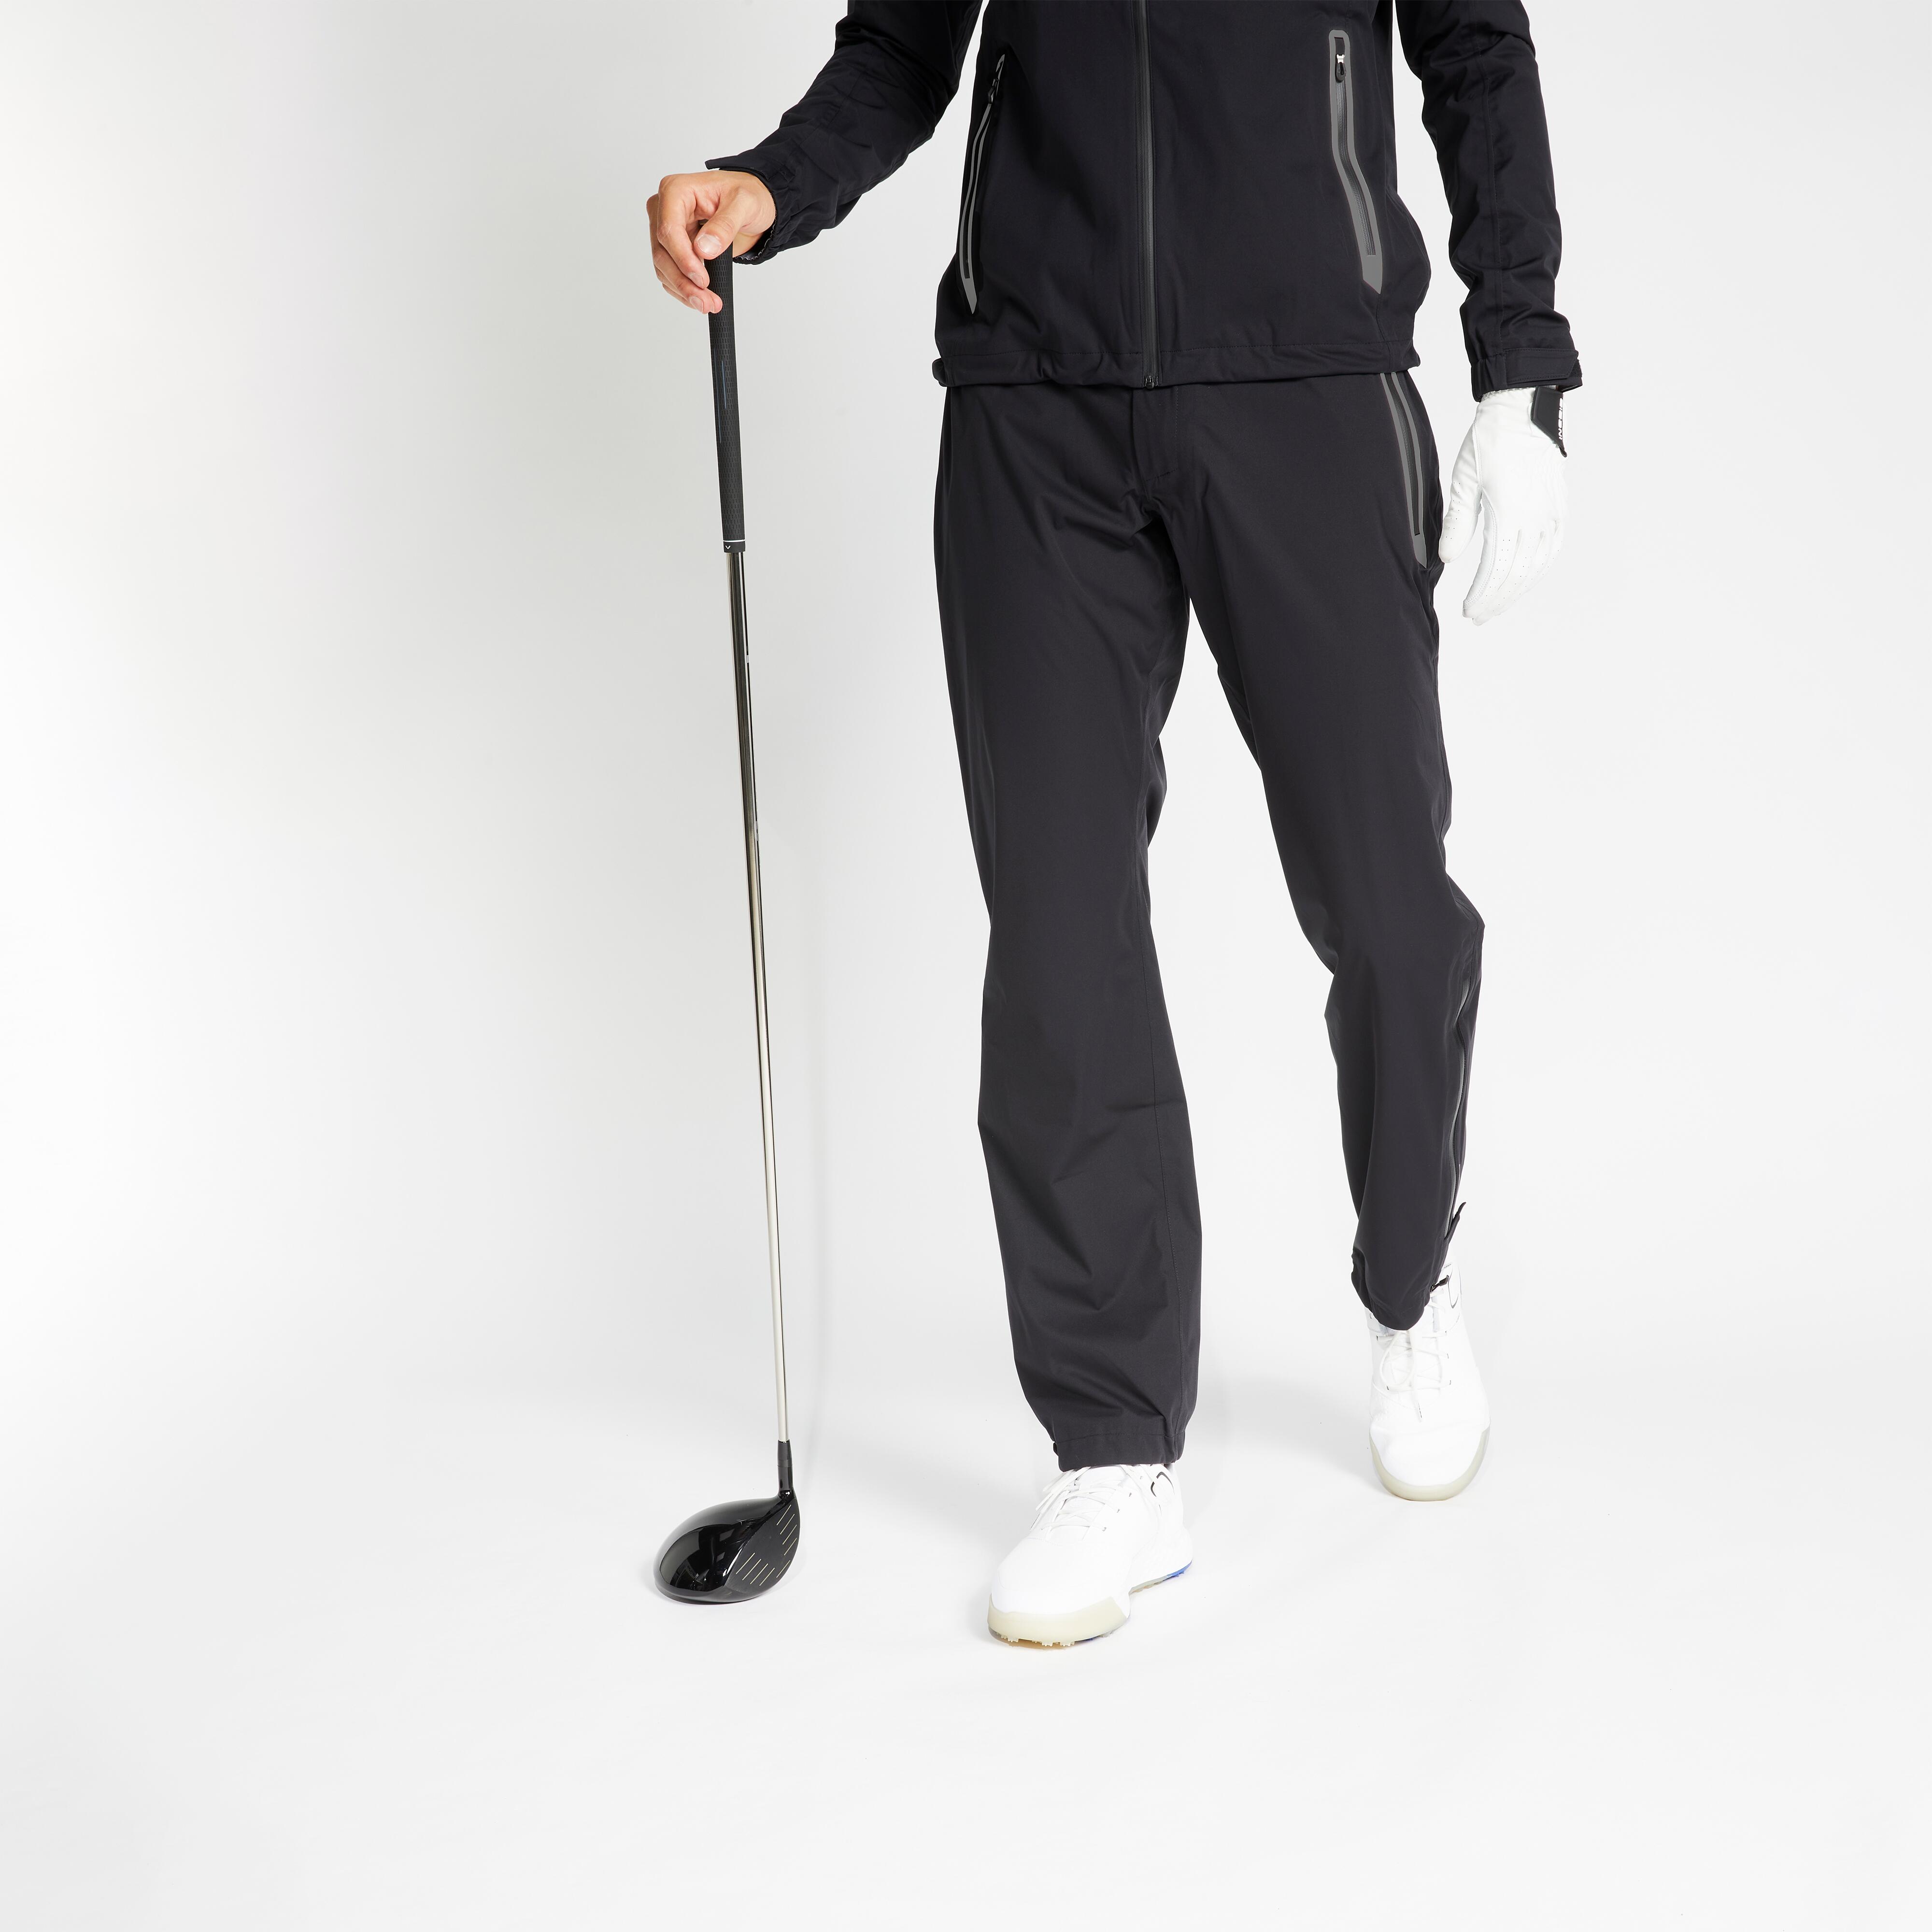 Best golf rain gear Waterproof rain pants for golfers